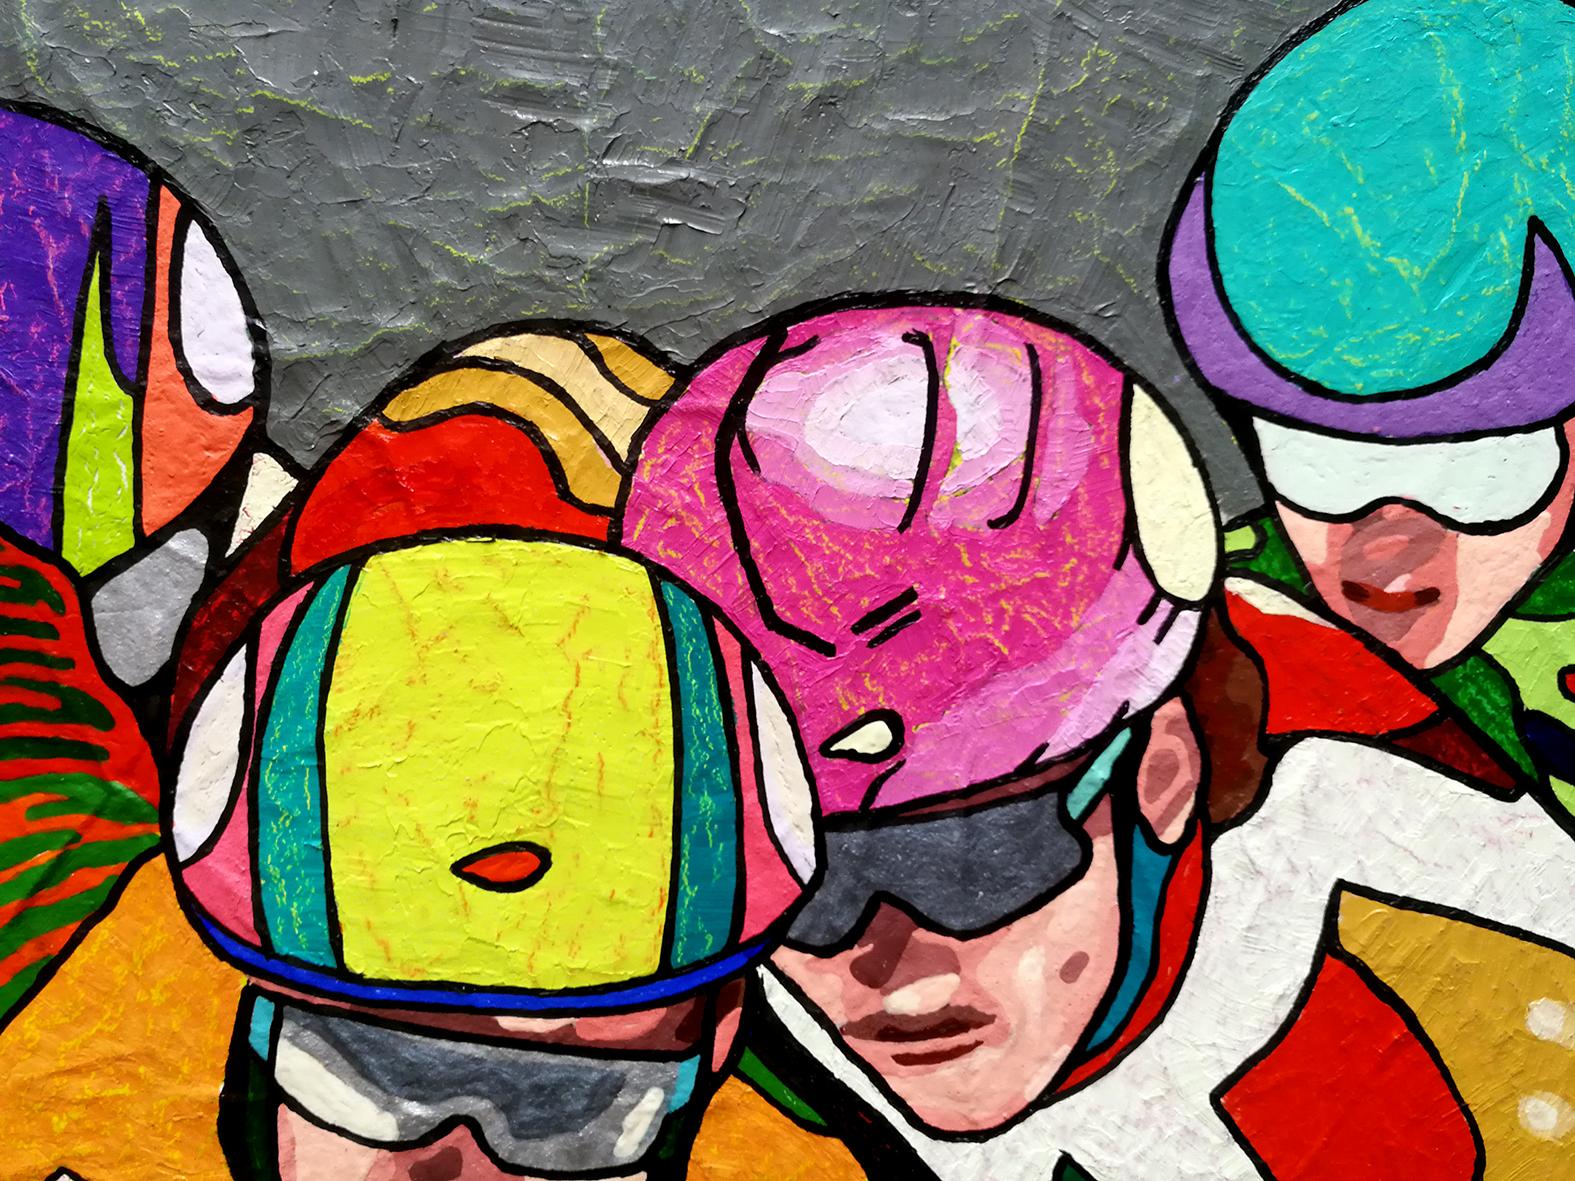 Winterspiele, das große Finale – Sport-Gemälde in den Farben Orange, Gelb, Grün und Blau (Schwarz), Figurative Painting, von Vlado Vesselinov